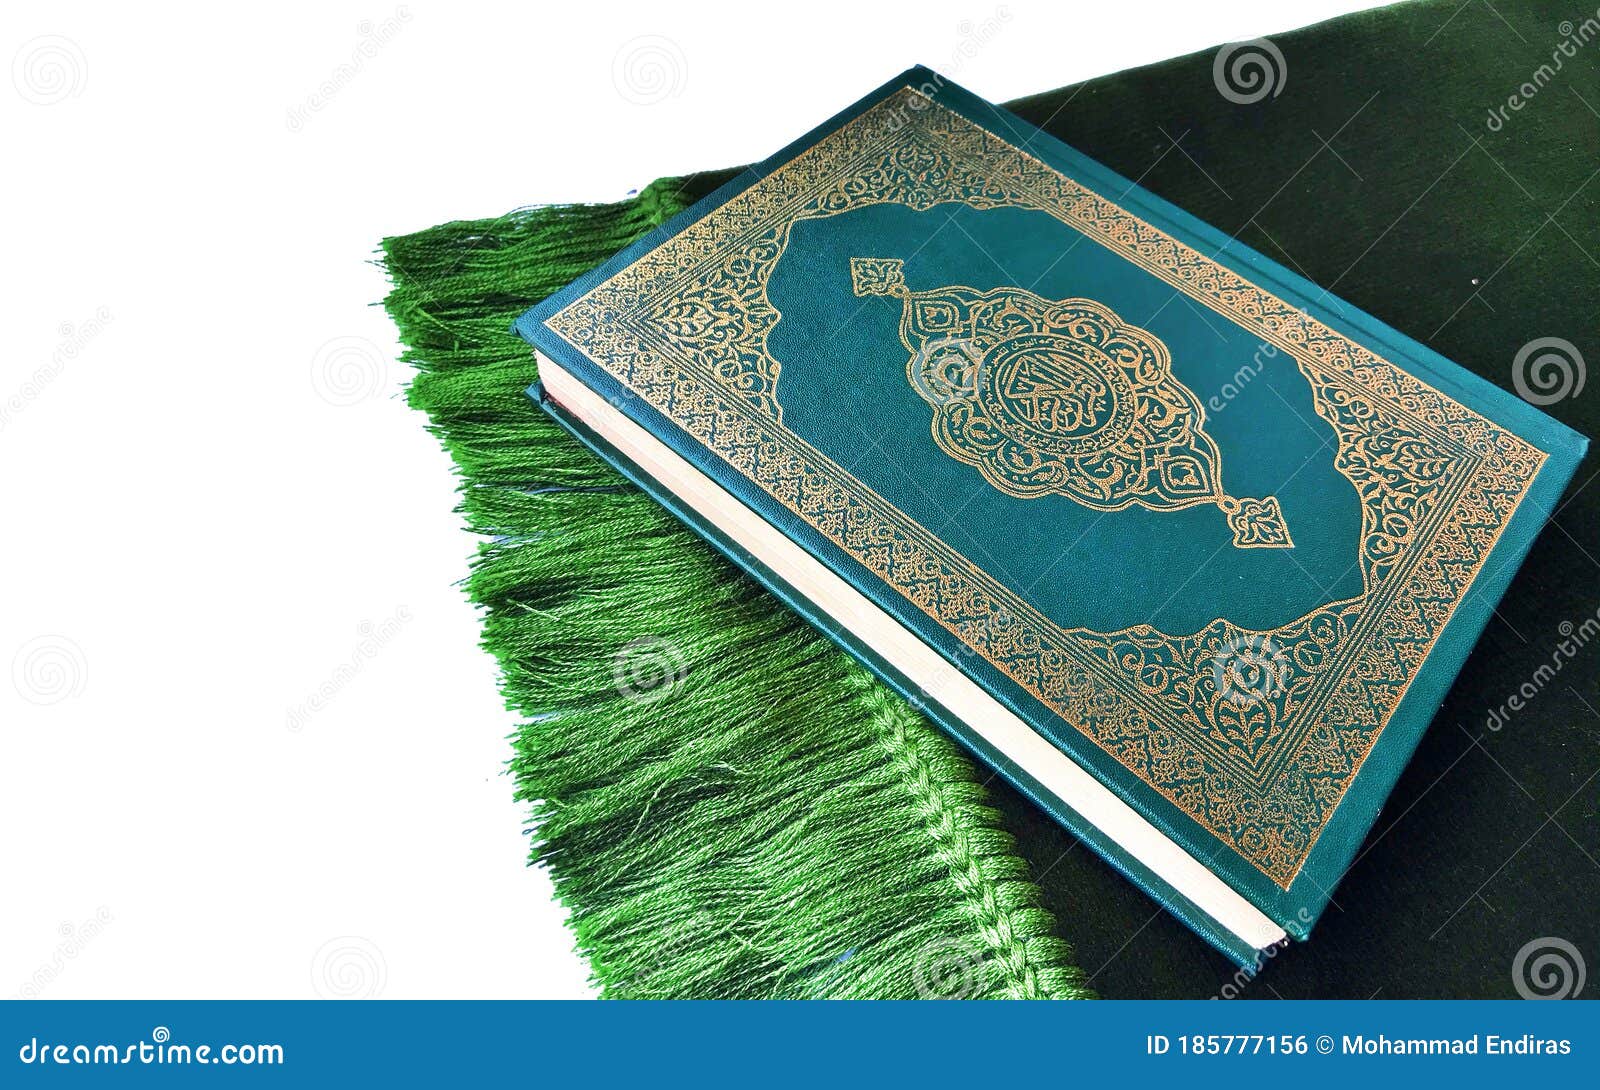 Green Quran: Những trang giấy màu xanh trong Quran tượng trưng cho sự sống và hy vọng. Hãy tìm hiểu về những thông điệp đầy ý nghĩa đằng sau những trang sách đầy màu sắc này.